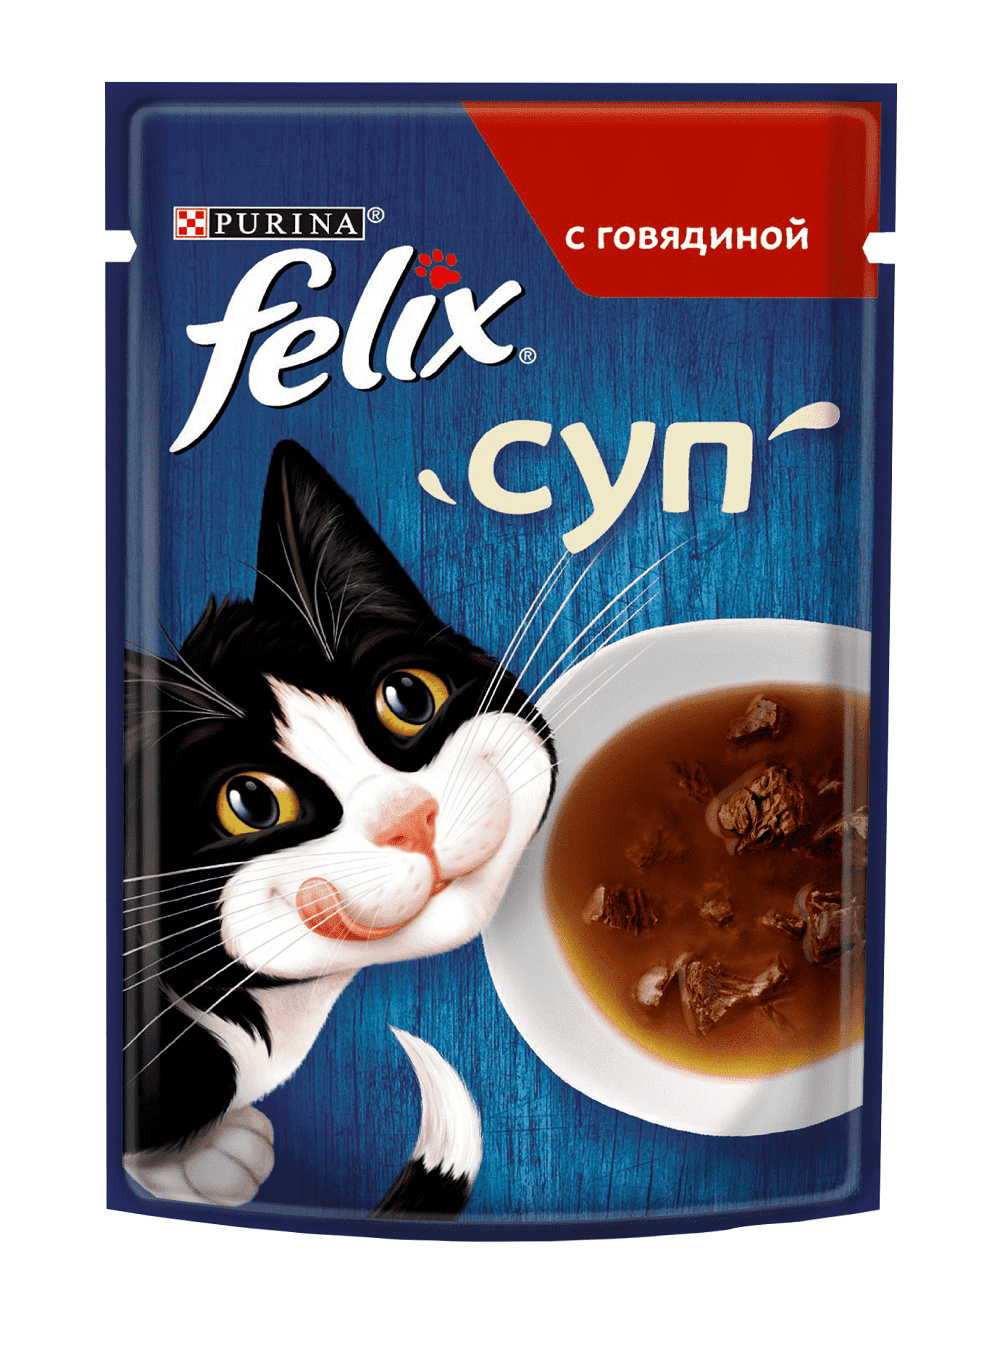 Felix влажный корм для взрослых кошек, с говядиной, суп (48 г) Felix влажный корм для взрослых кошек, с говядиной, суп (48 г) - фото 1